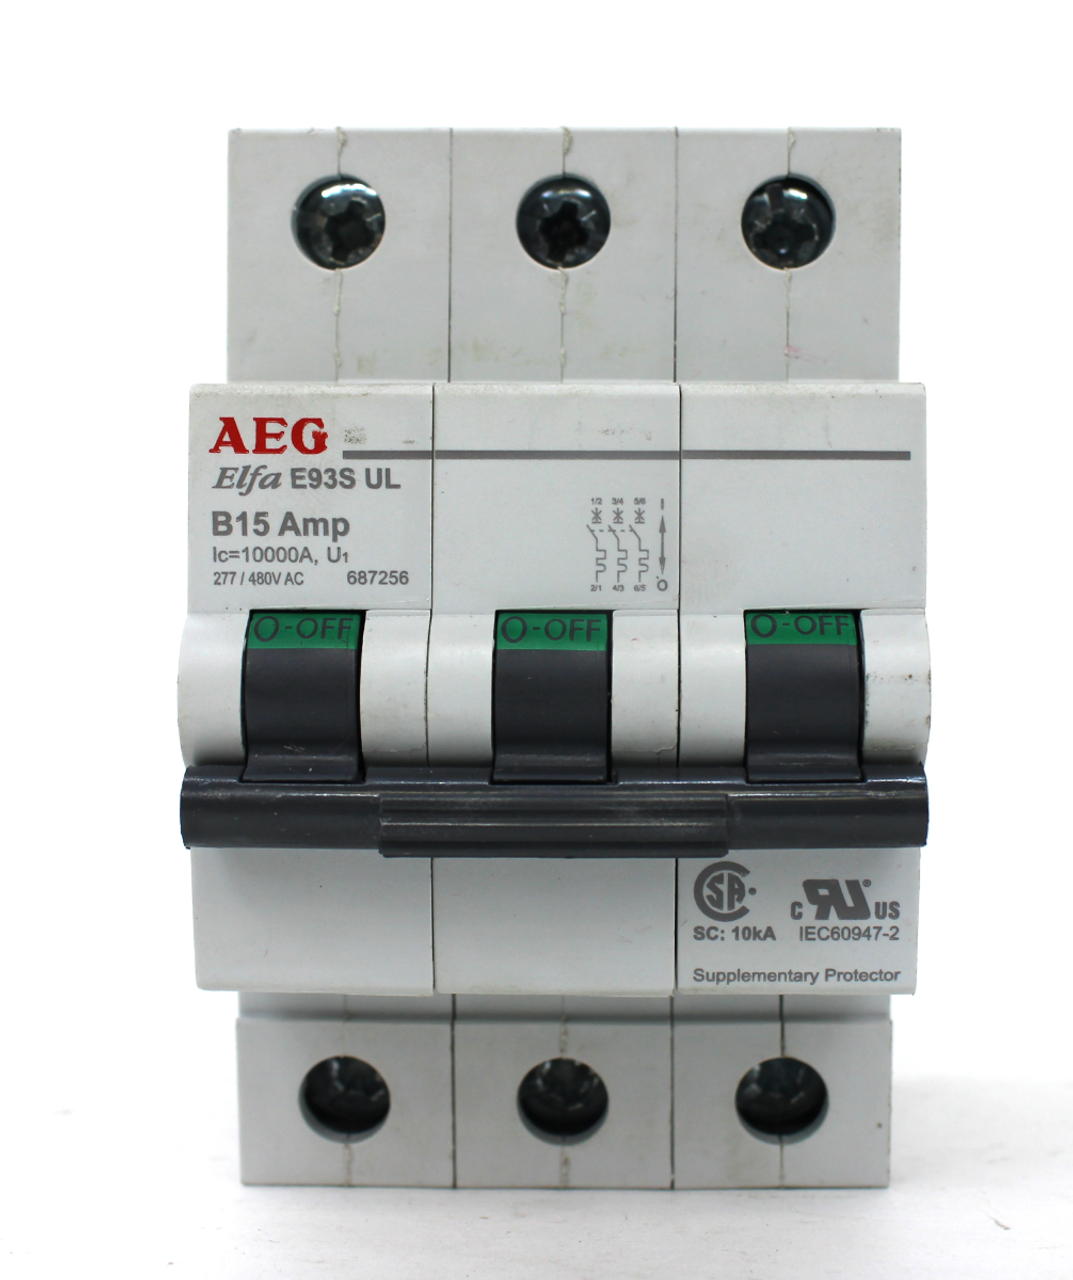 AEG Elfa E93S UL B15 Amp Circuit Breaker 277/480VAC